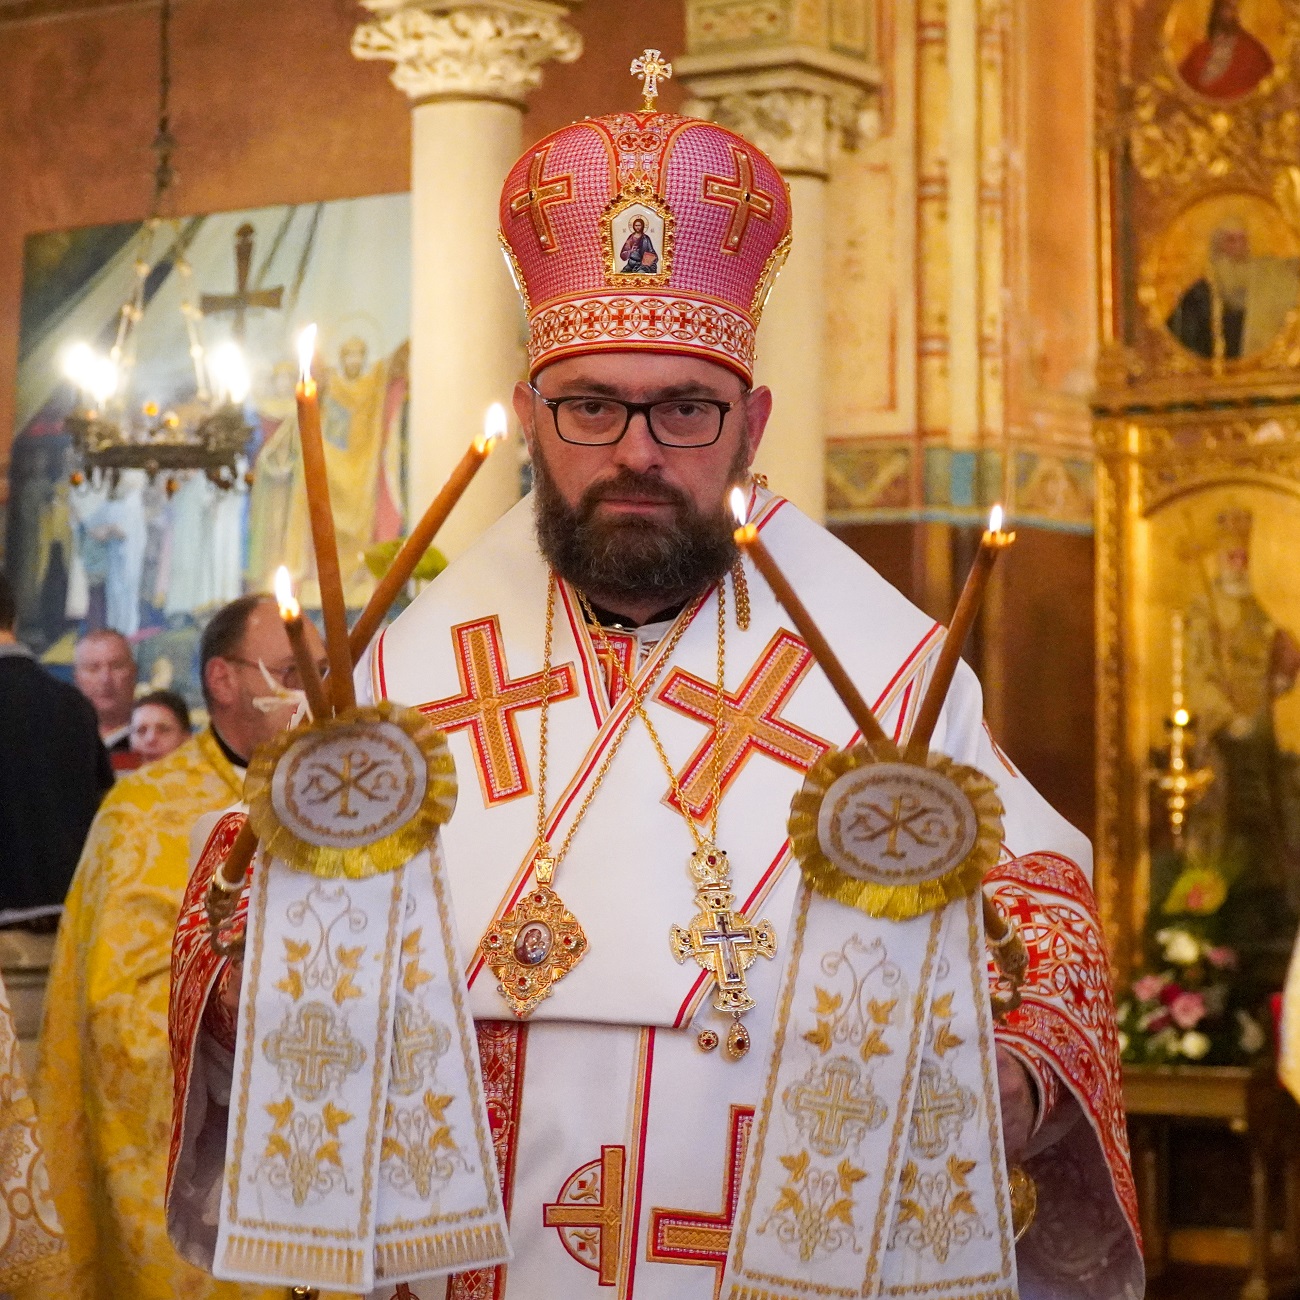 Bishop Milan Stipic